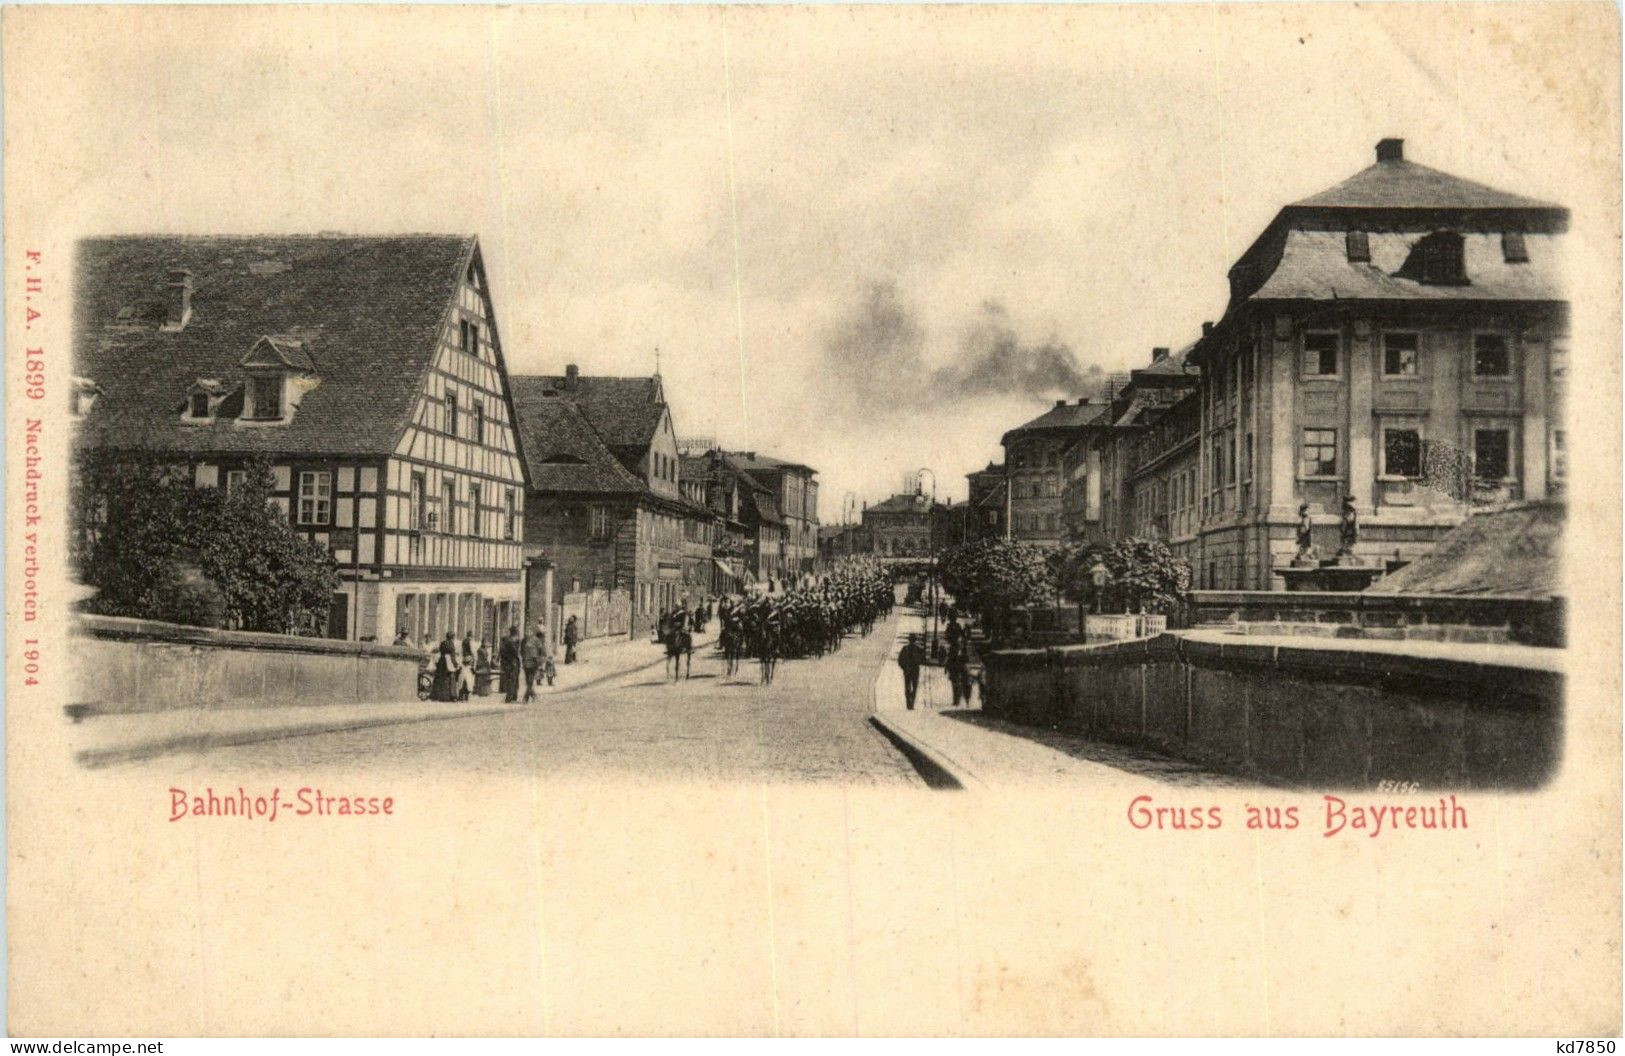 Gruss Aus Bayreuth - Bahnhof-Strasse - Bayreuth